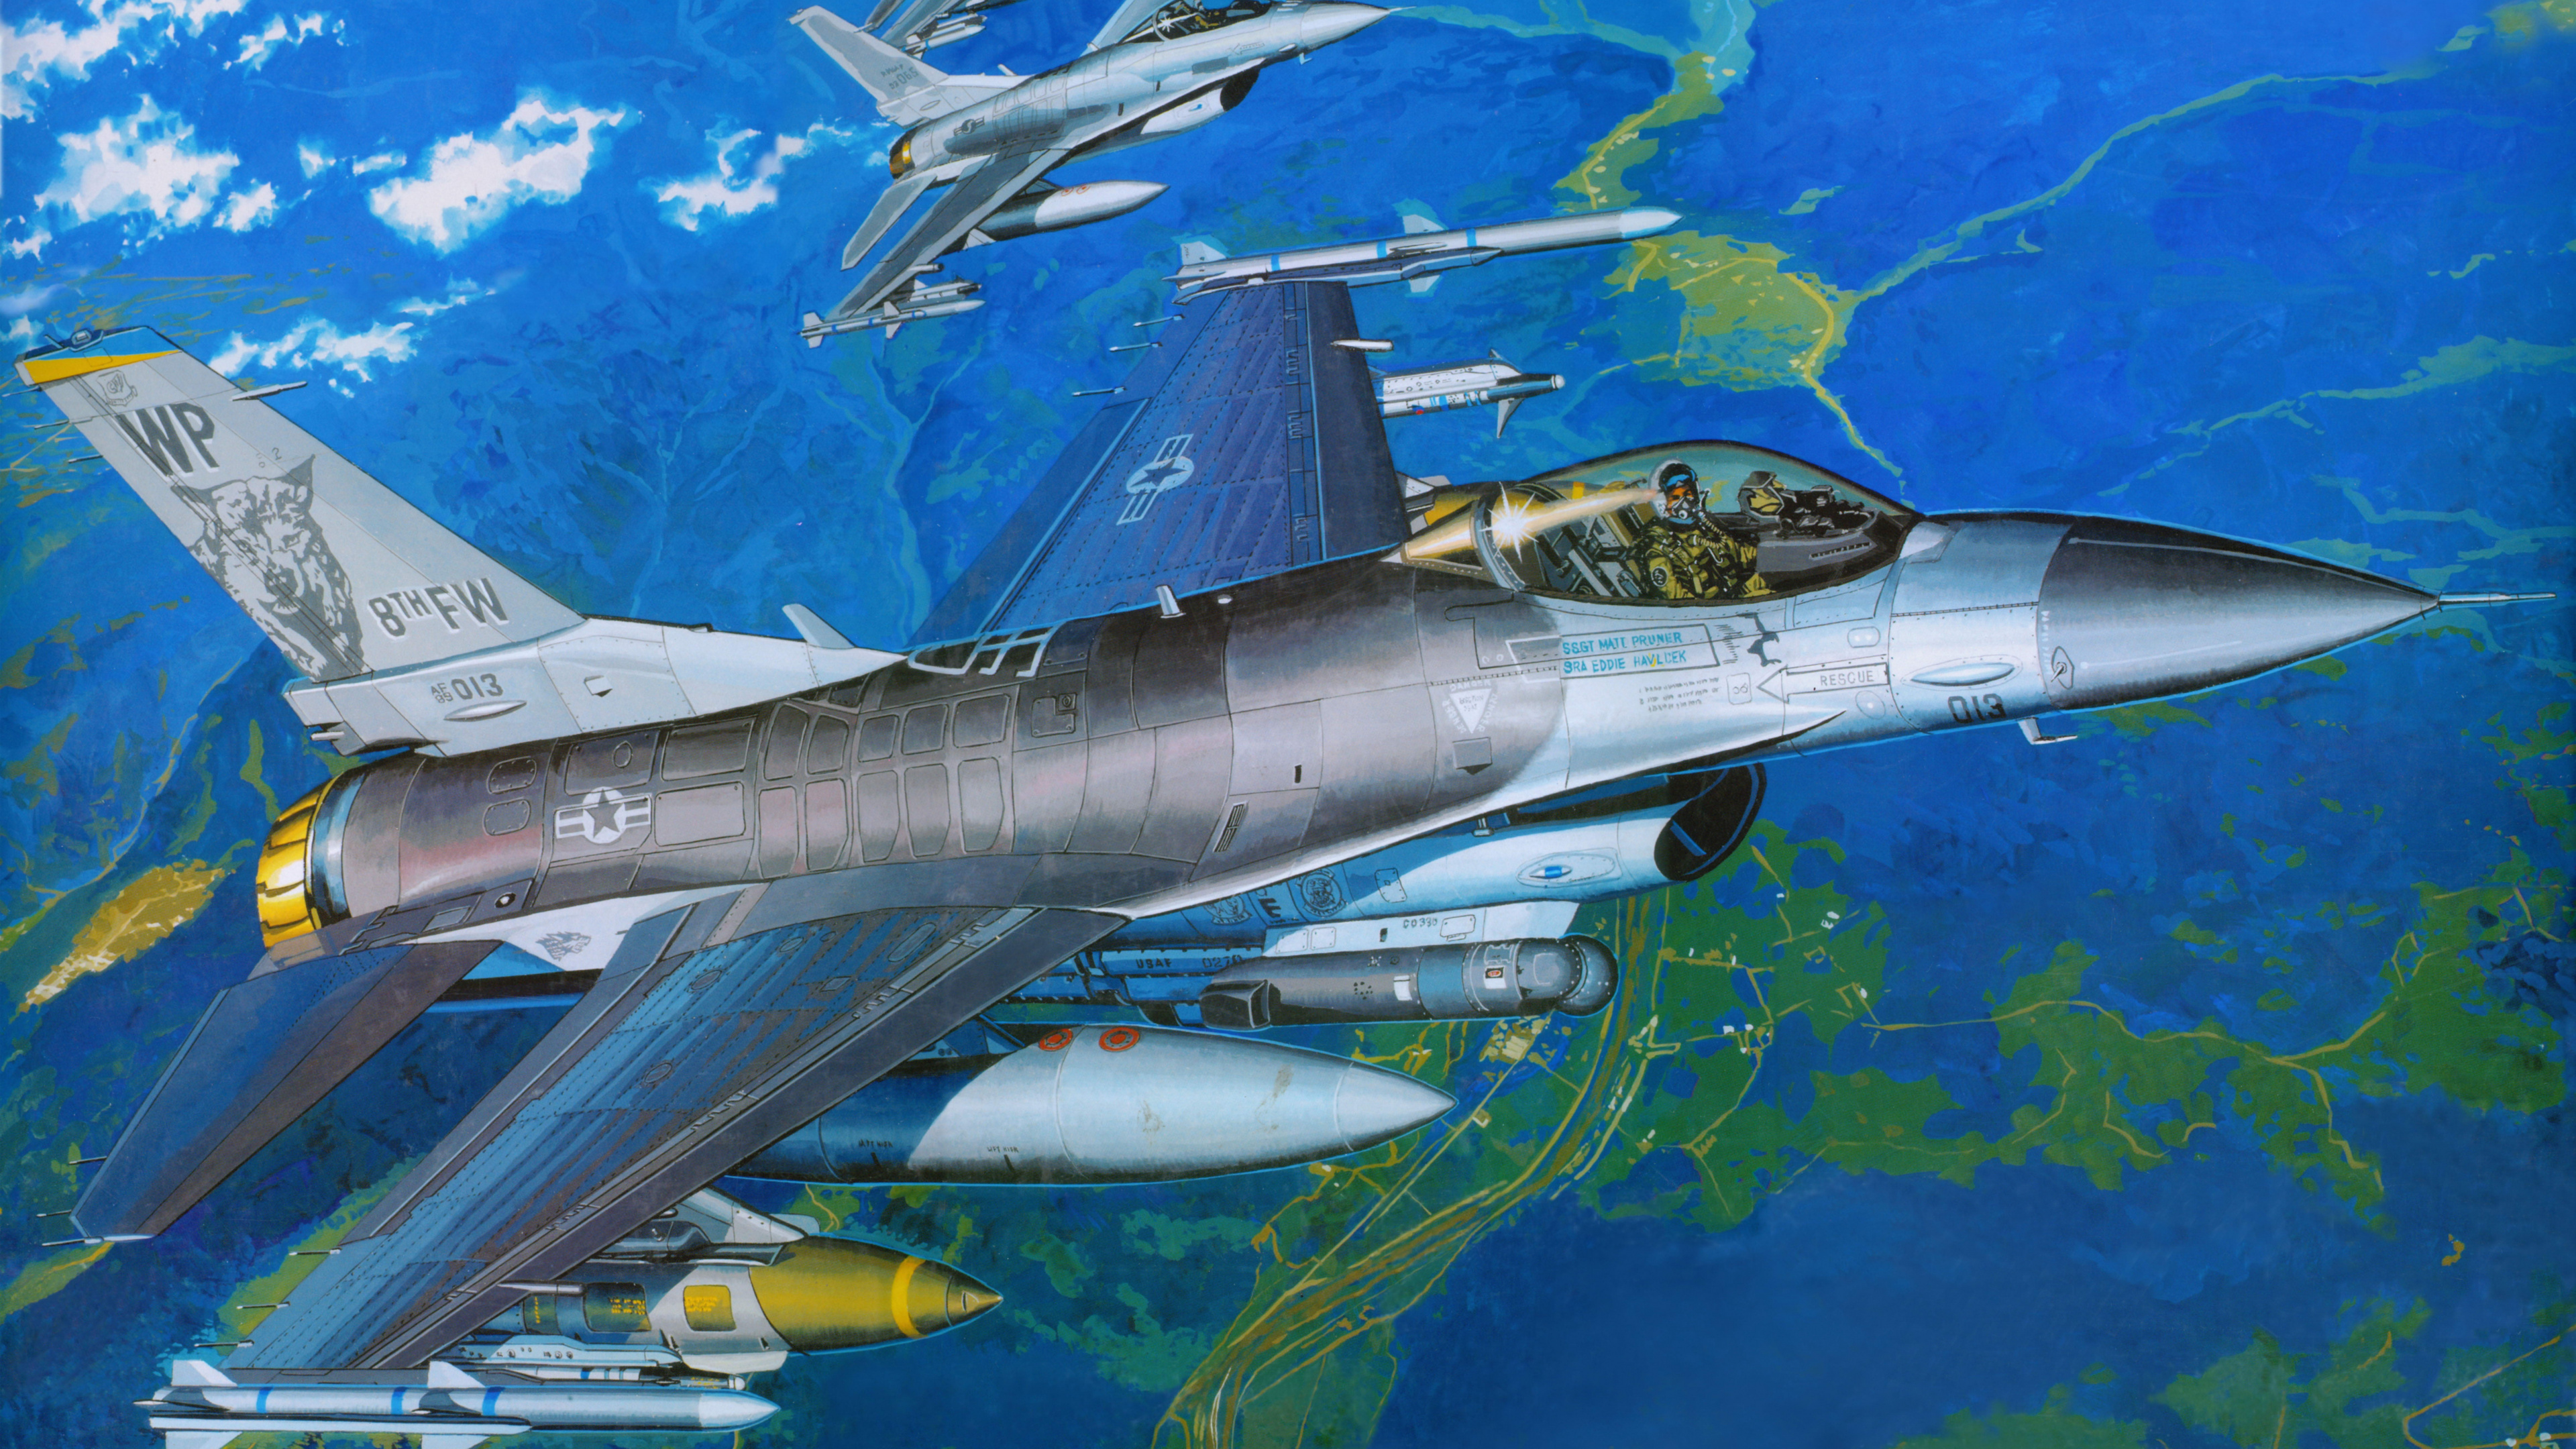 塑料模型, 航空, 空军, 军用飞机, 喷气式飞机 壁纸 3840x2160 允许